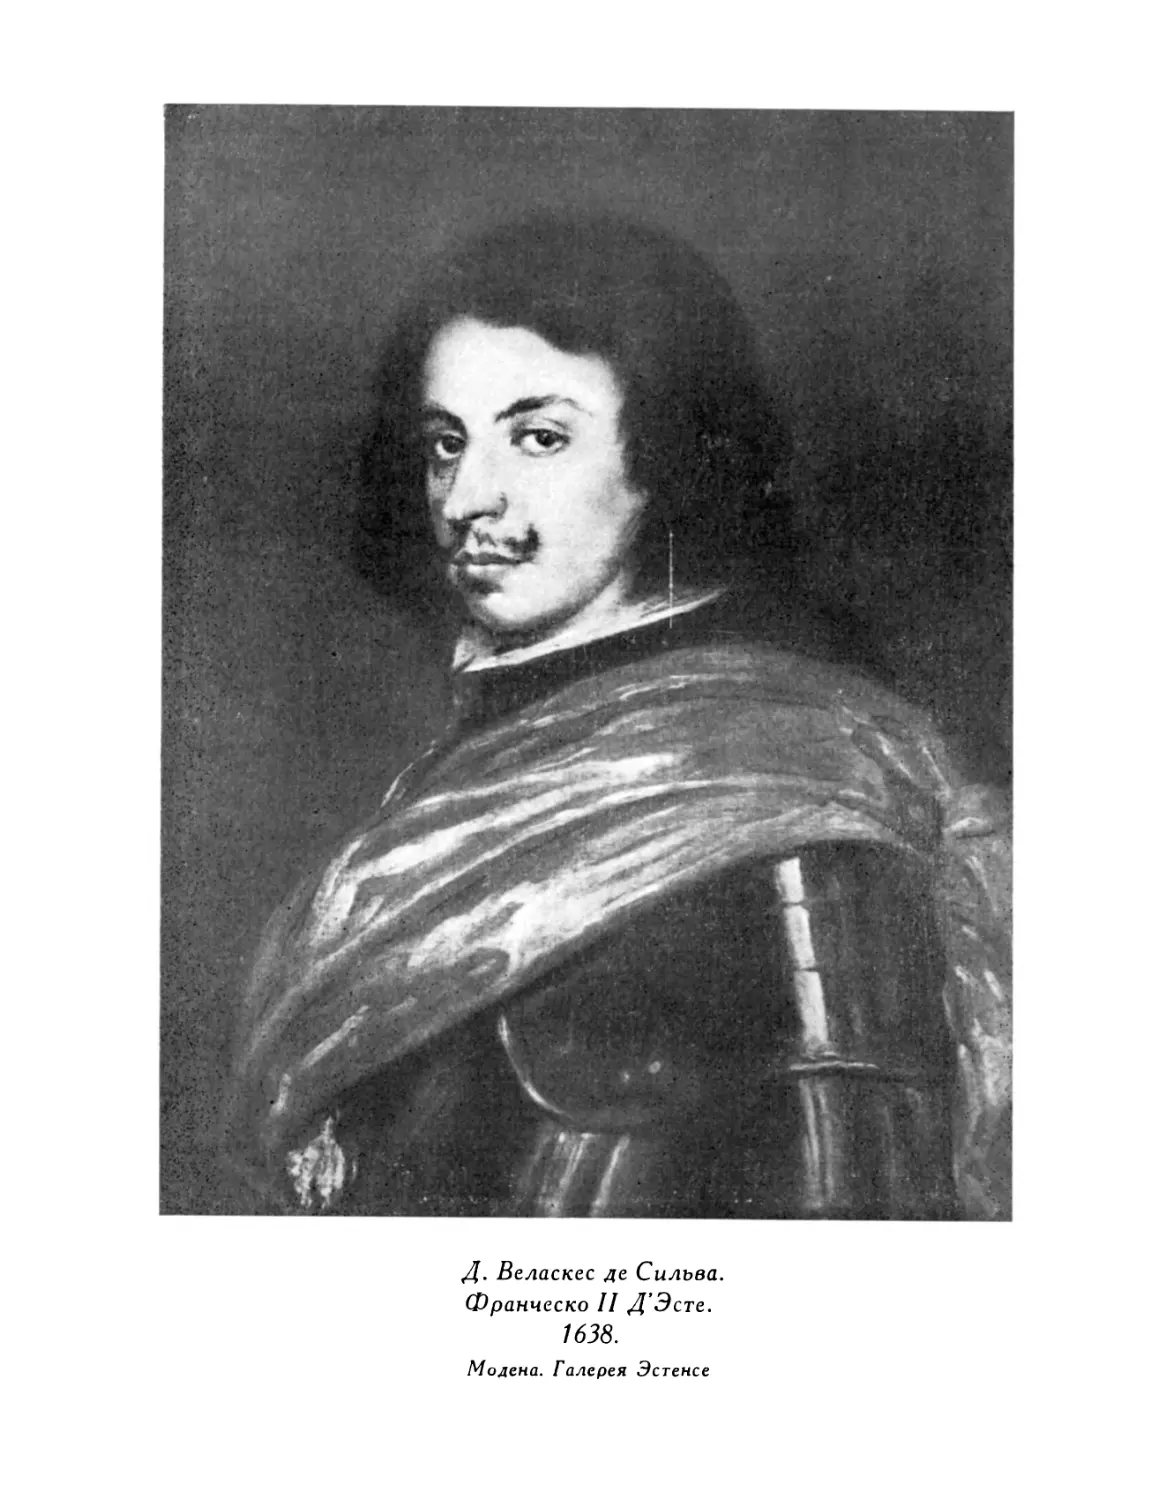 Д. Веласкес де Сильва. Франческо II Д'Эсте. 1638